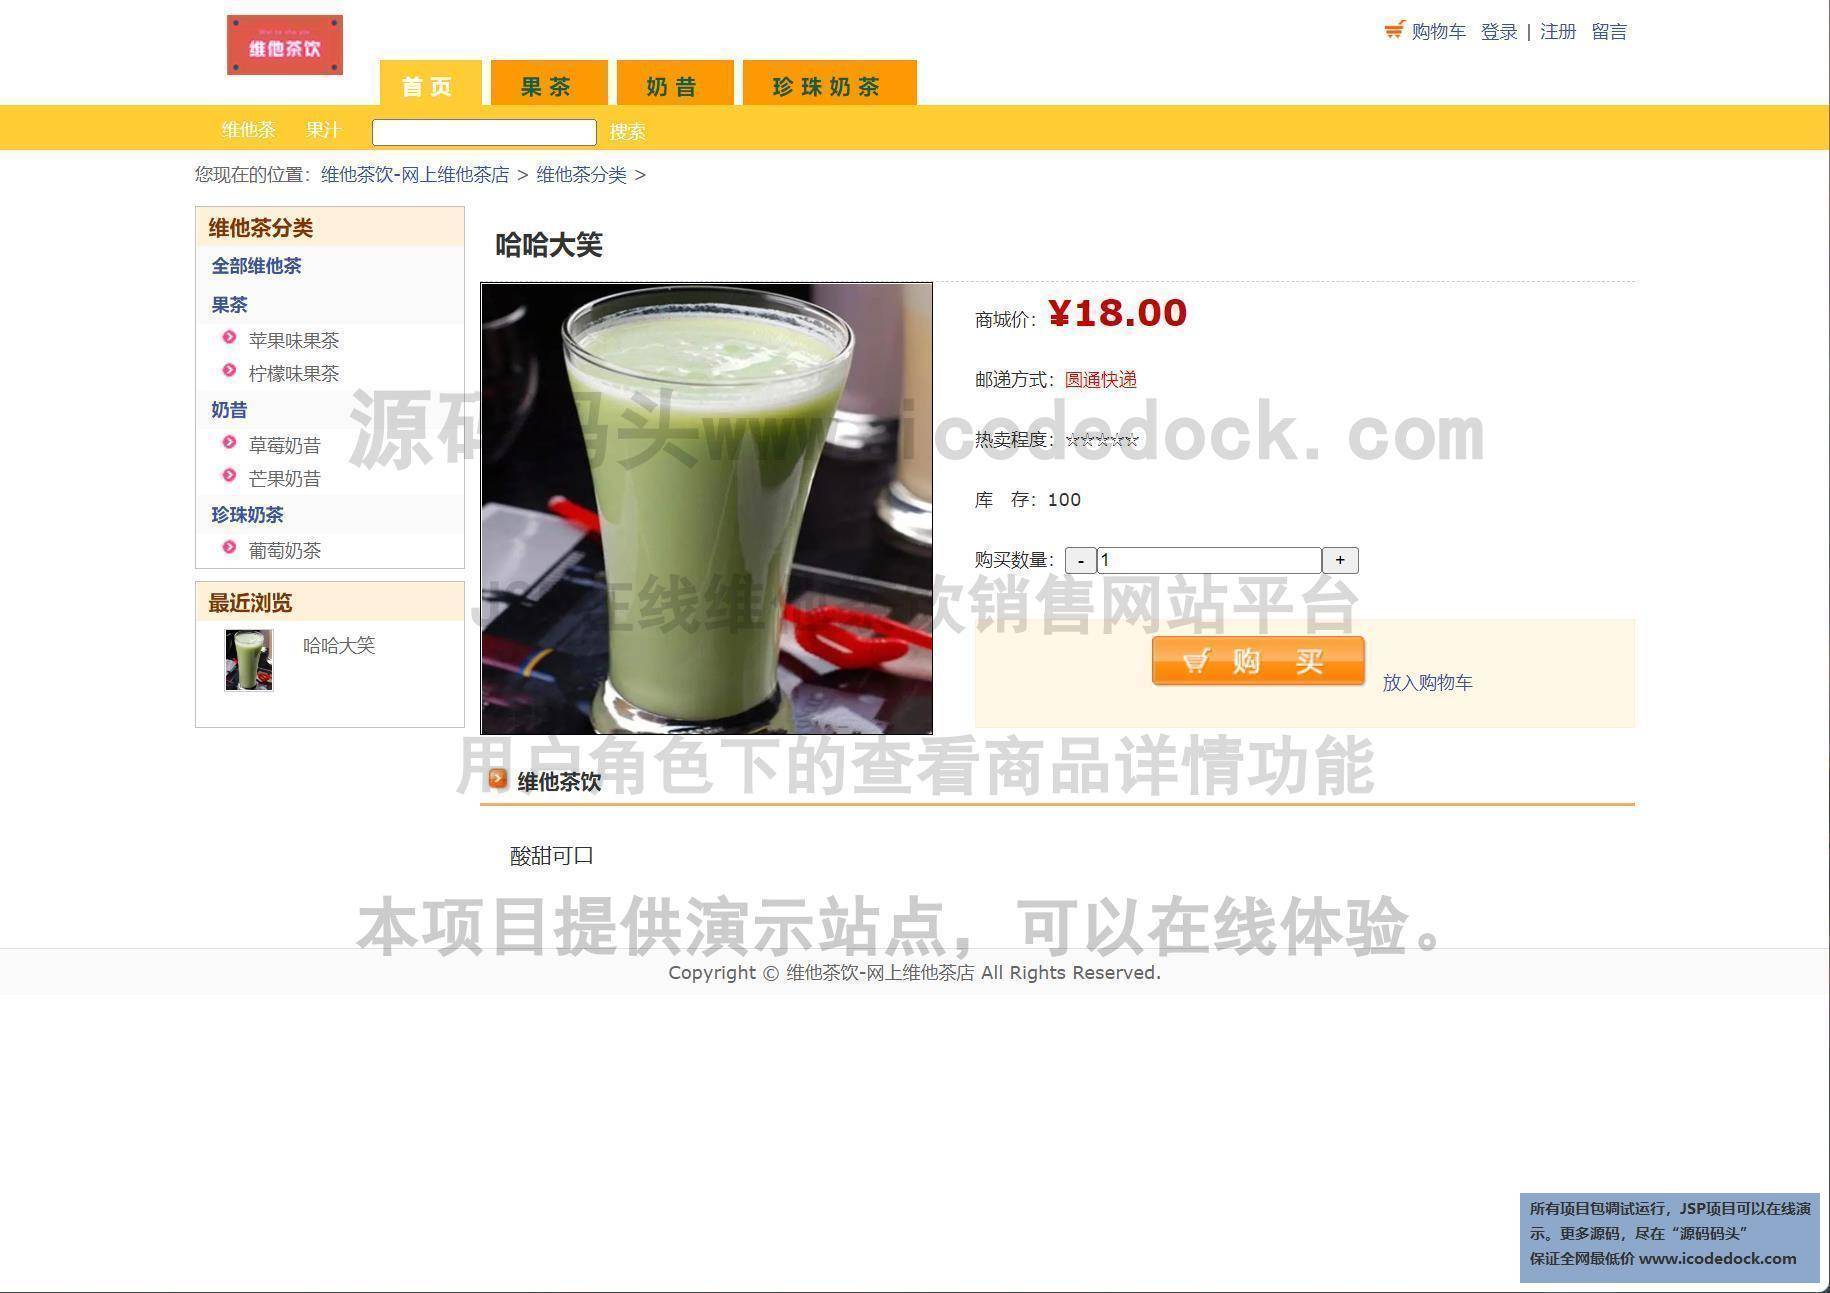 源码码头-JSP在线维他茶饮销售网站平台-用户角色-查看商品详情